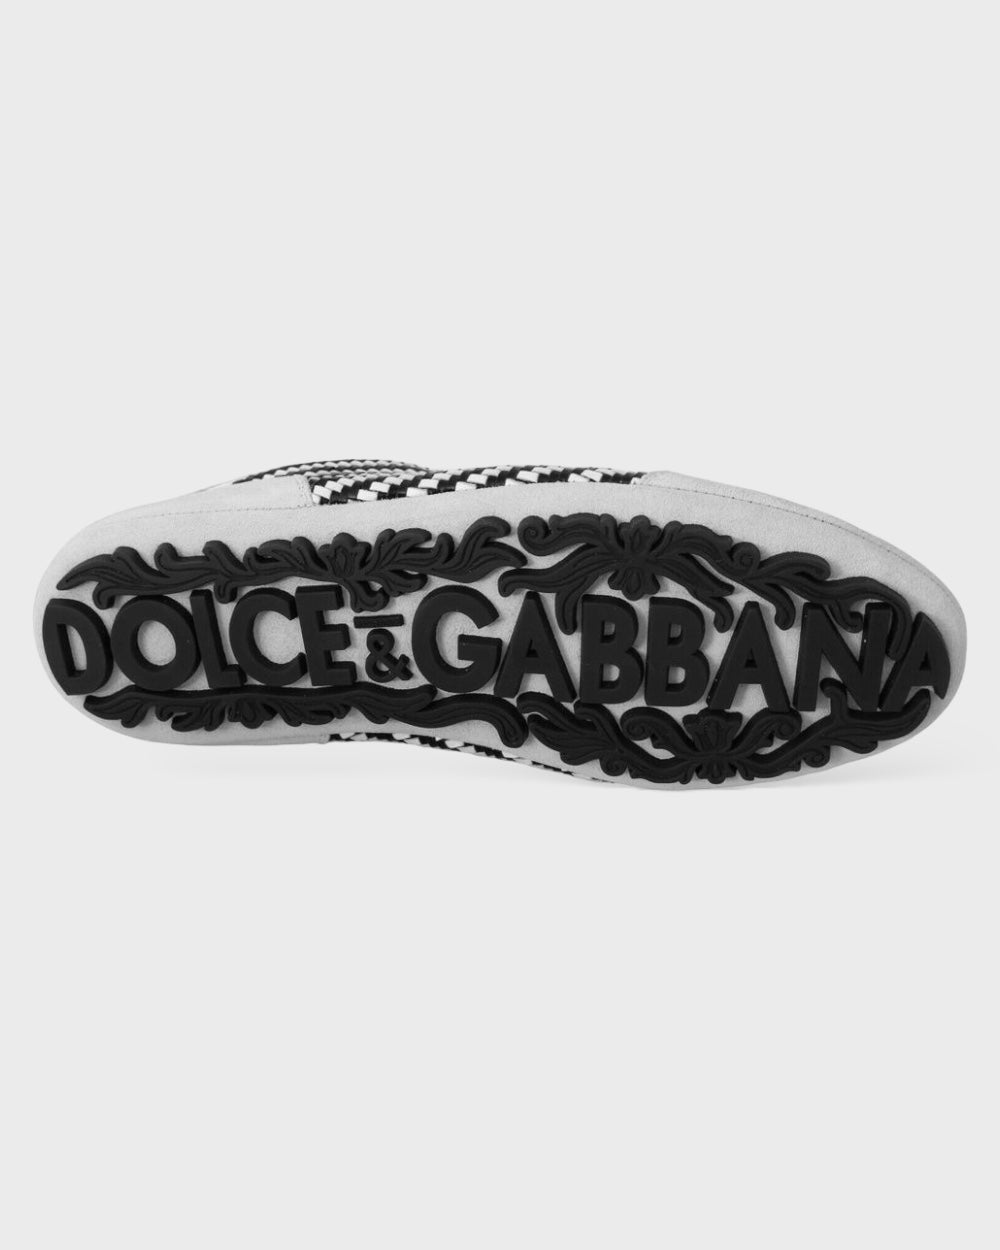 Dolce & Gabbana Gray Leather Di Canguro Formal